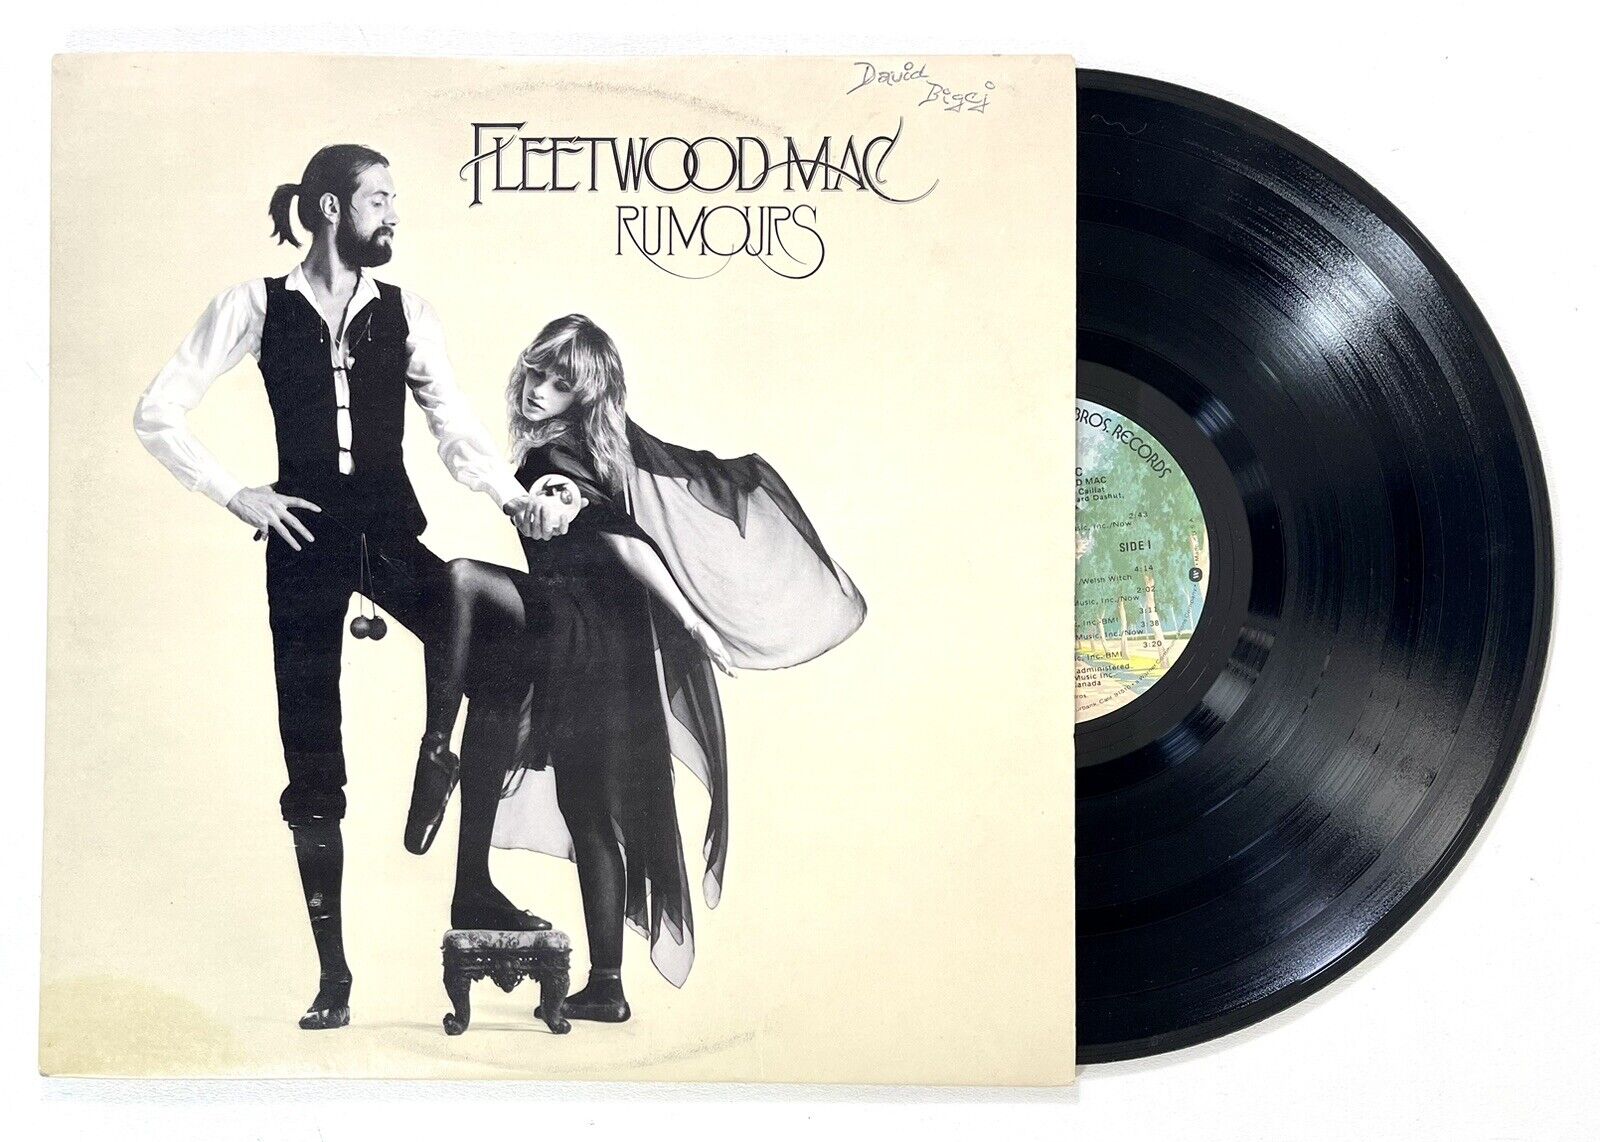 Fleetwood Mac – Rumours Vinyl LP Record 1977 Warner Bros. – BSK 3010 Album